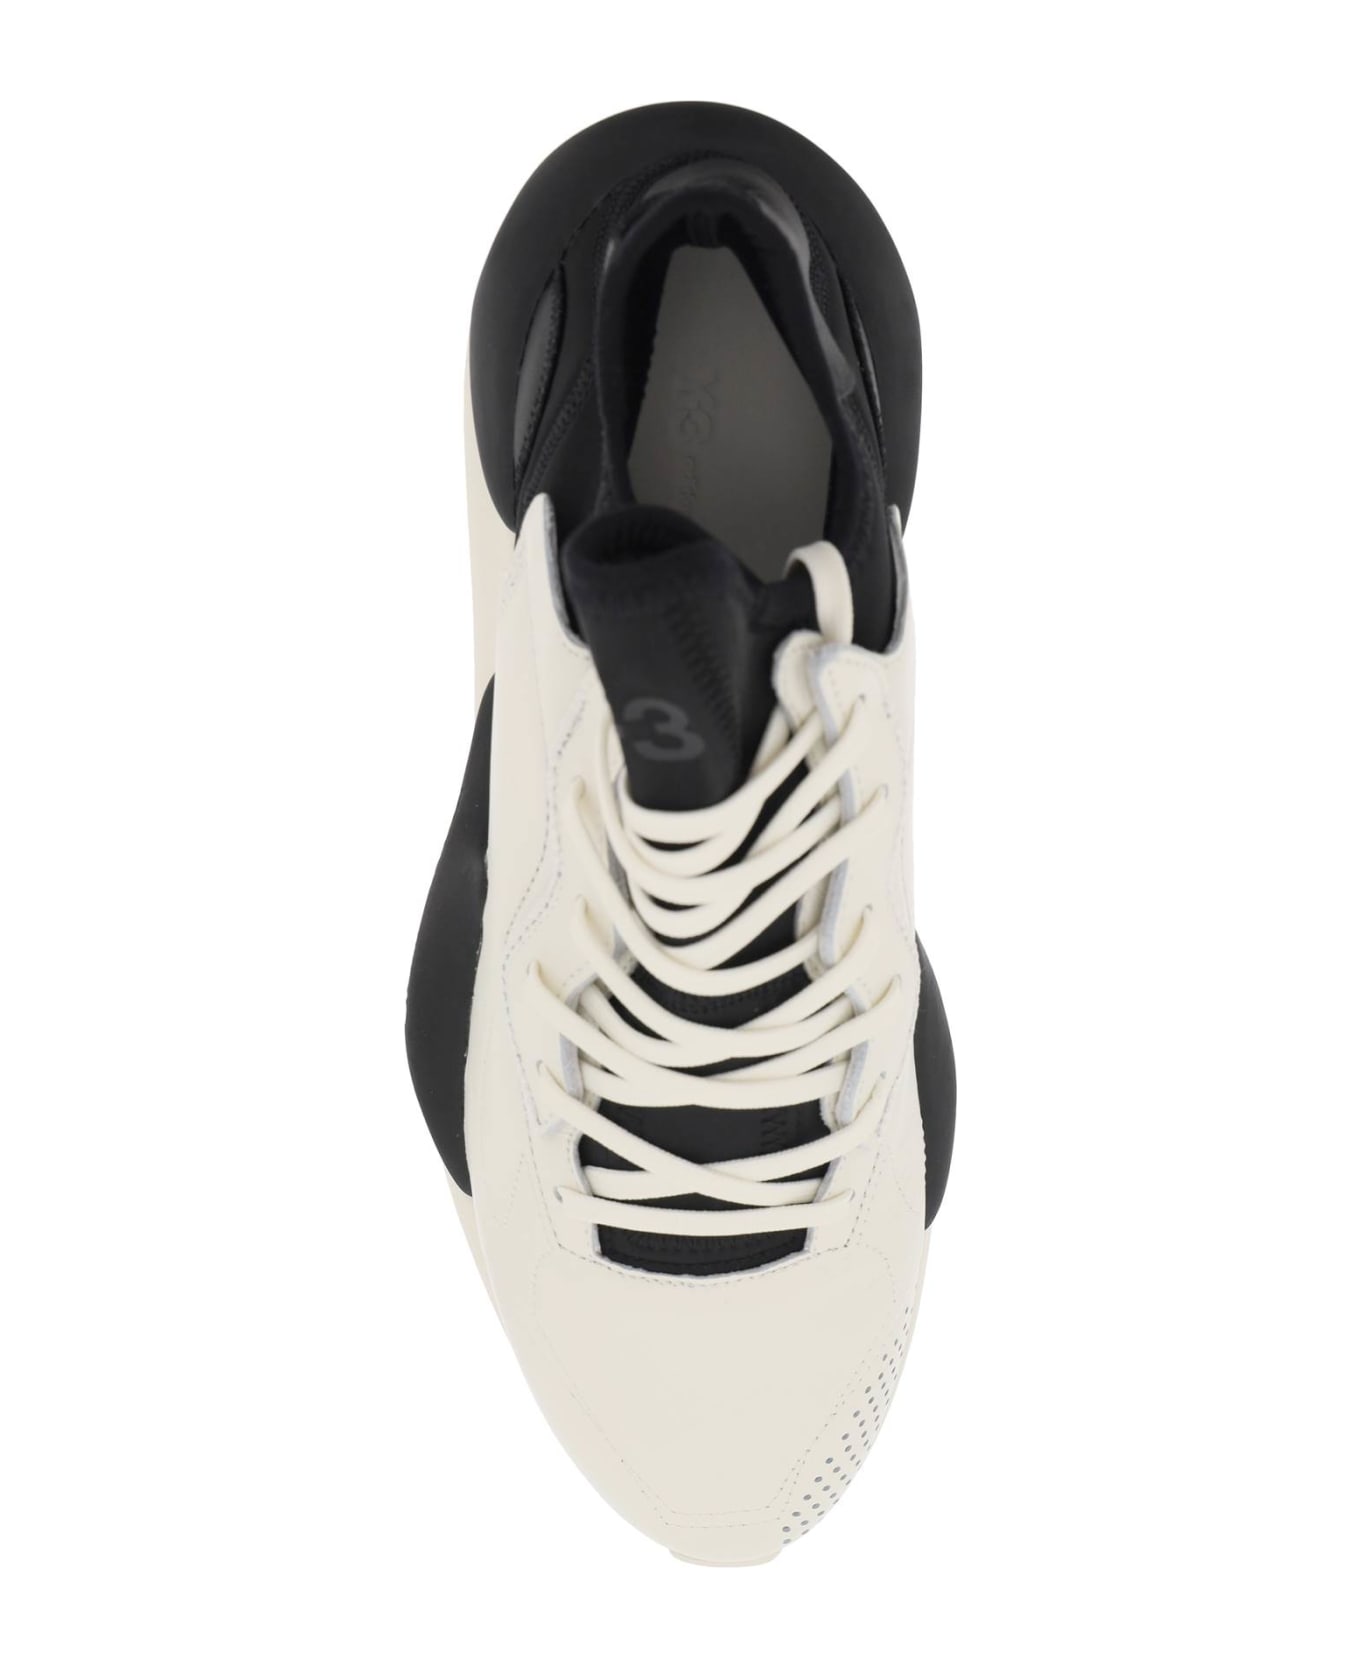 Y-3 'kaiwa' White Leather Sneakers - White スニーカー